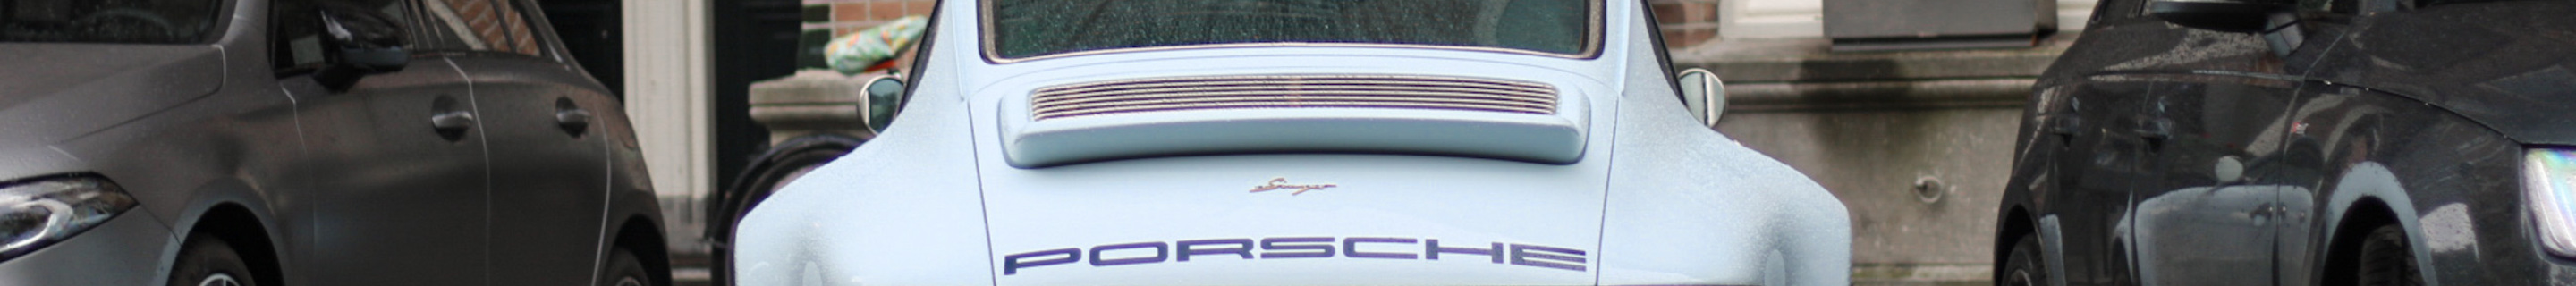 Porsche 911 Singer 4.0